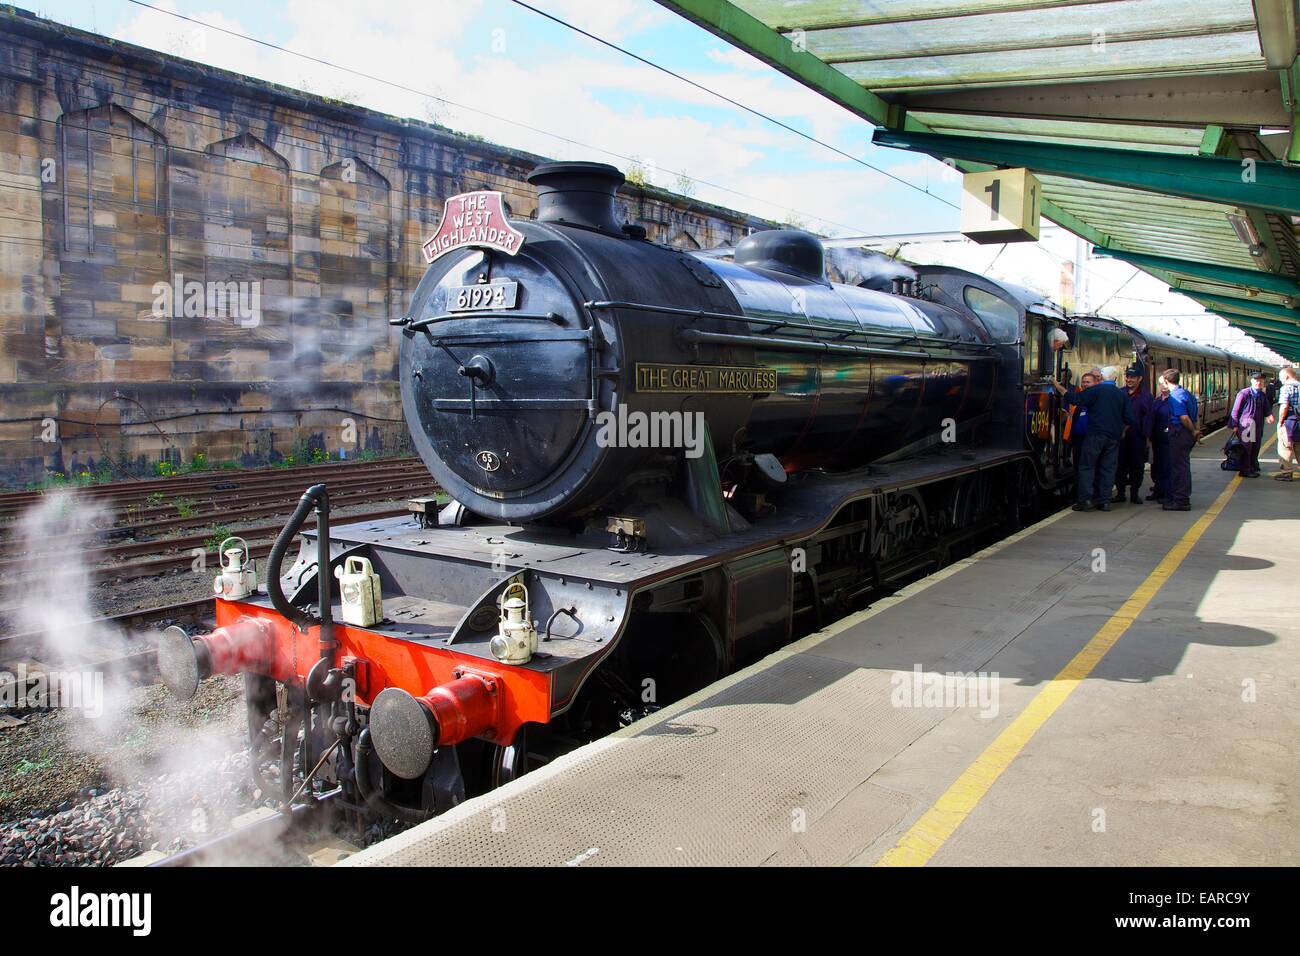 LNER Classe K4 2-6-0 'Le Grand Marquis" train à vapeur. La gare de Carlisle, Carlisle, Cumbria, West Coast Main Line, au Royaume-Uni. Banque D'Images